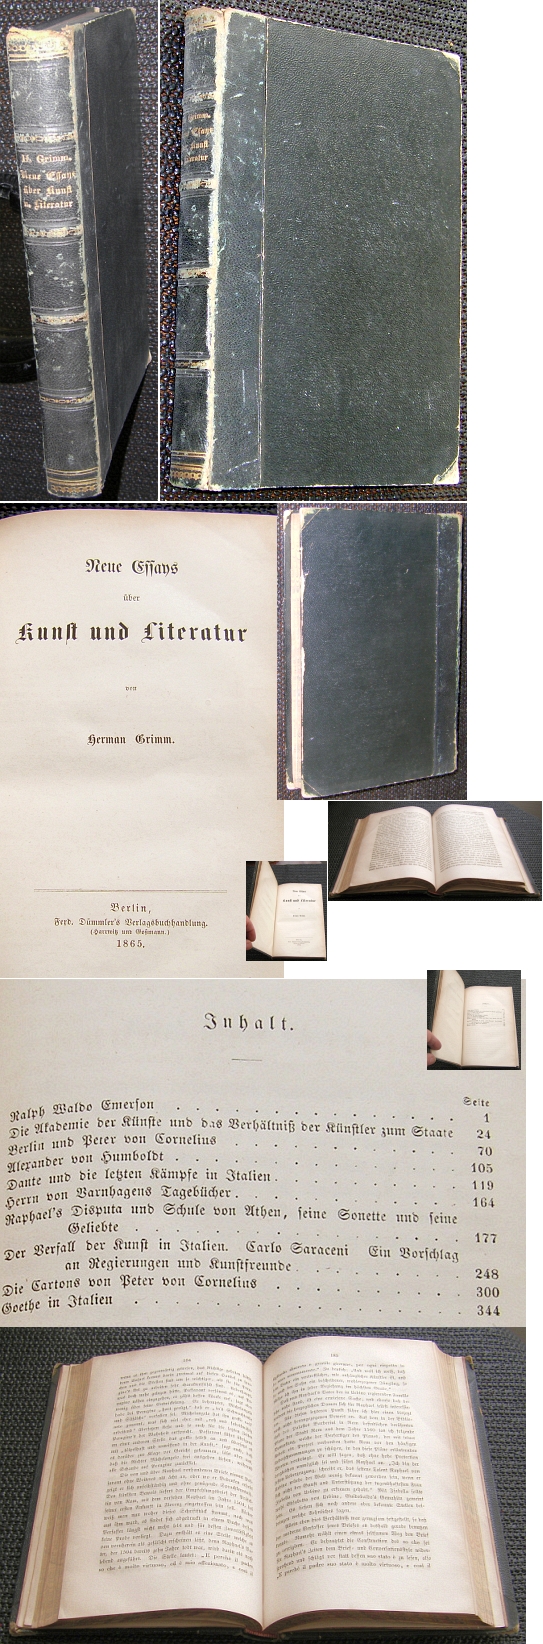 Buch: NEUE ESSAYS ber KUNST und LITERATUR Herman Grimm 1865 - 120,00 Eur